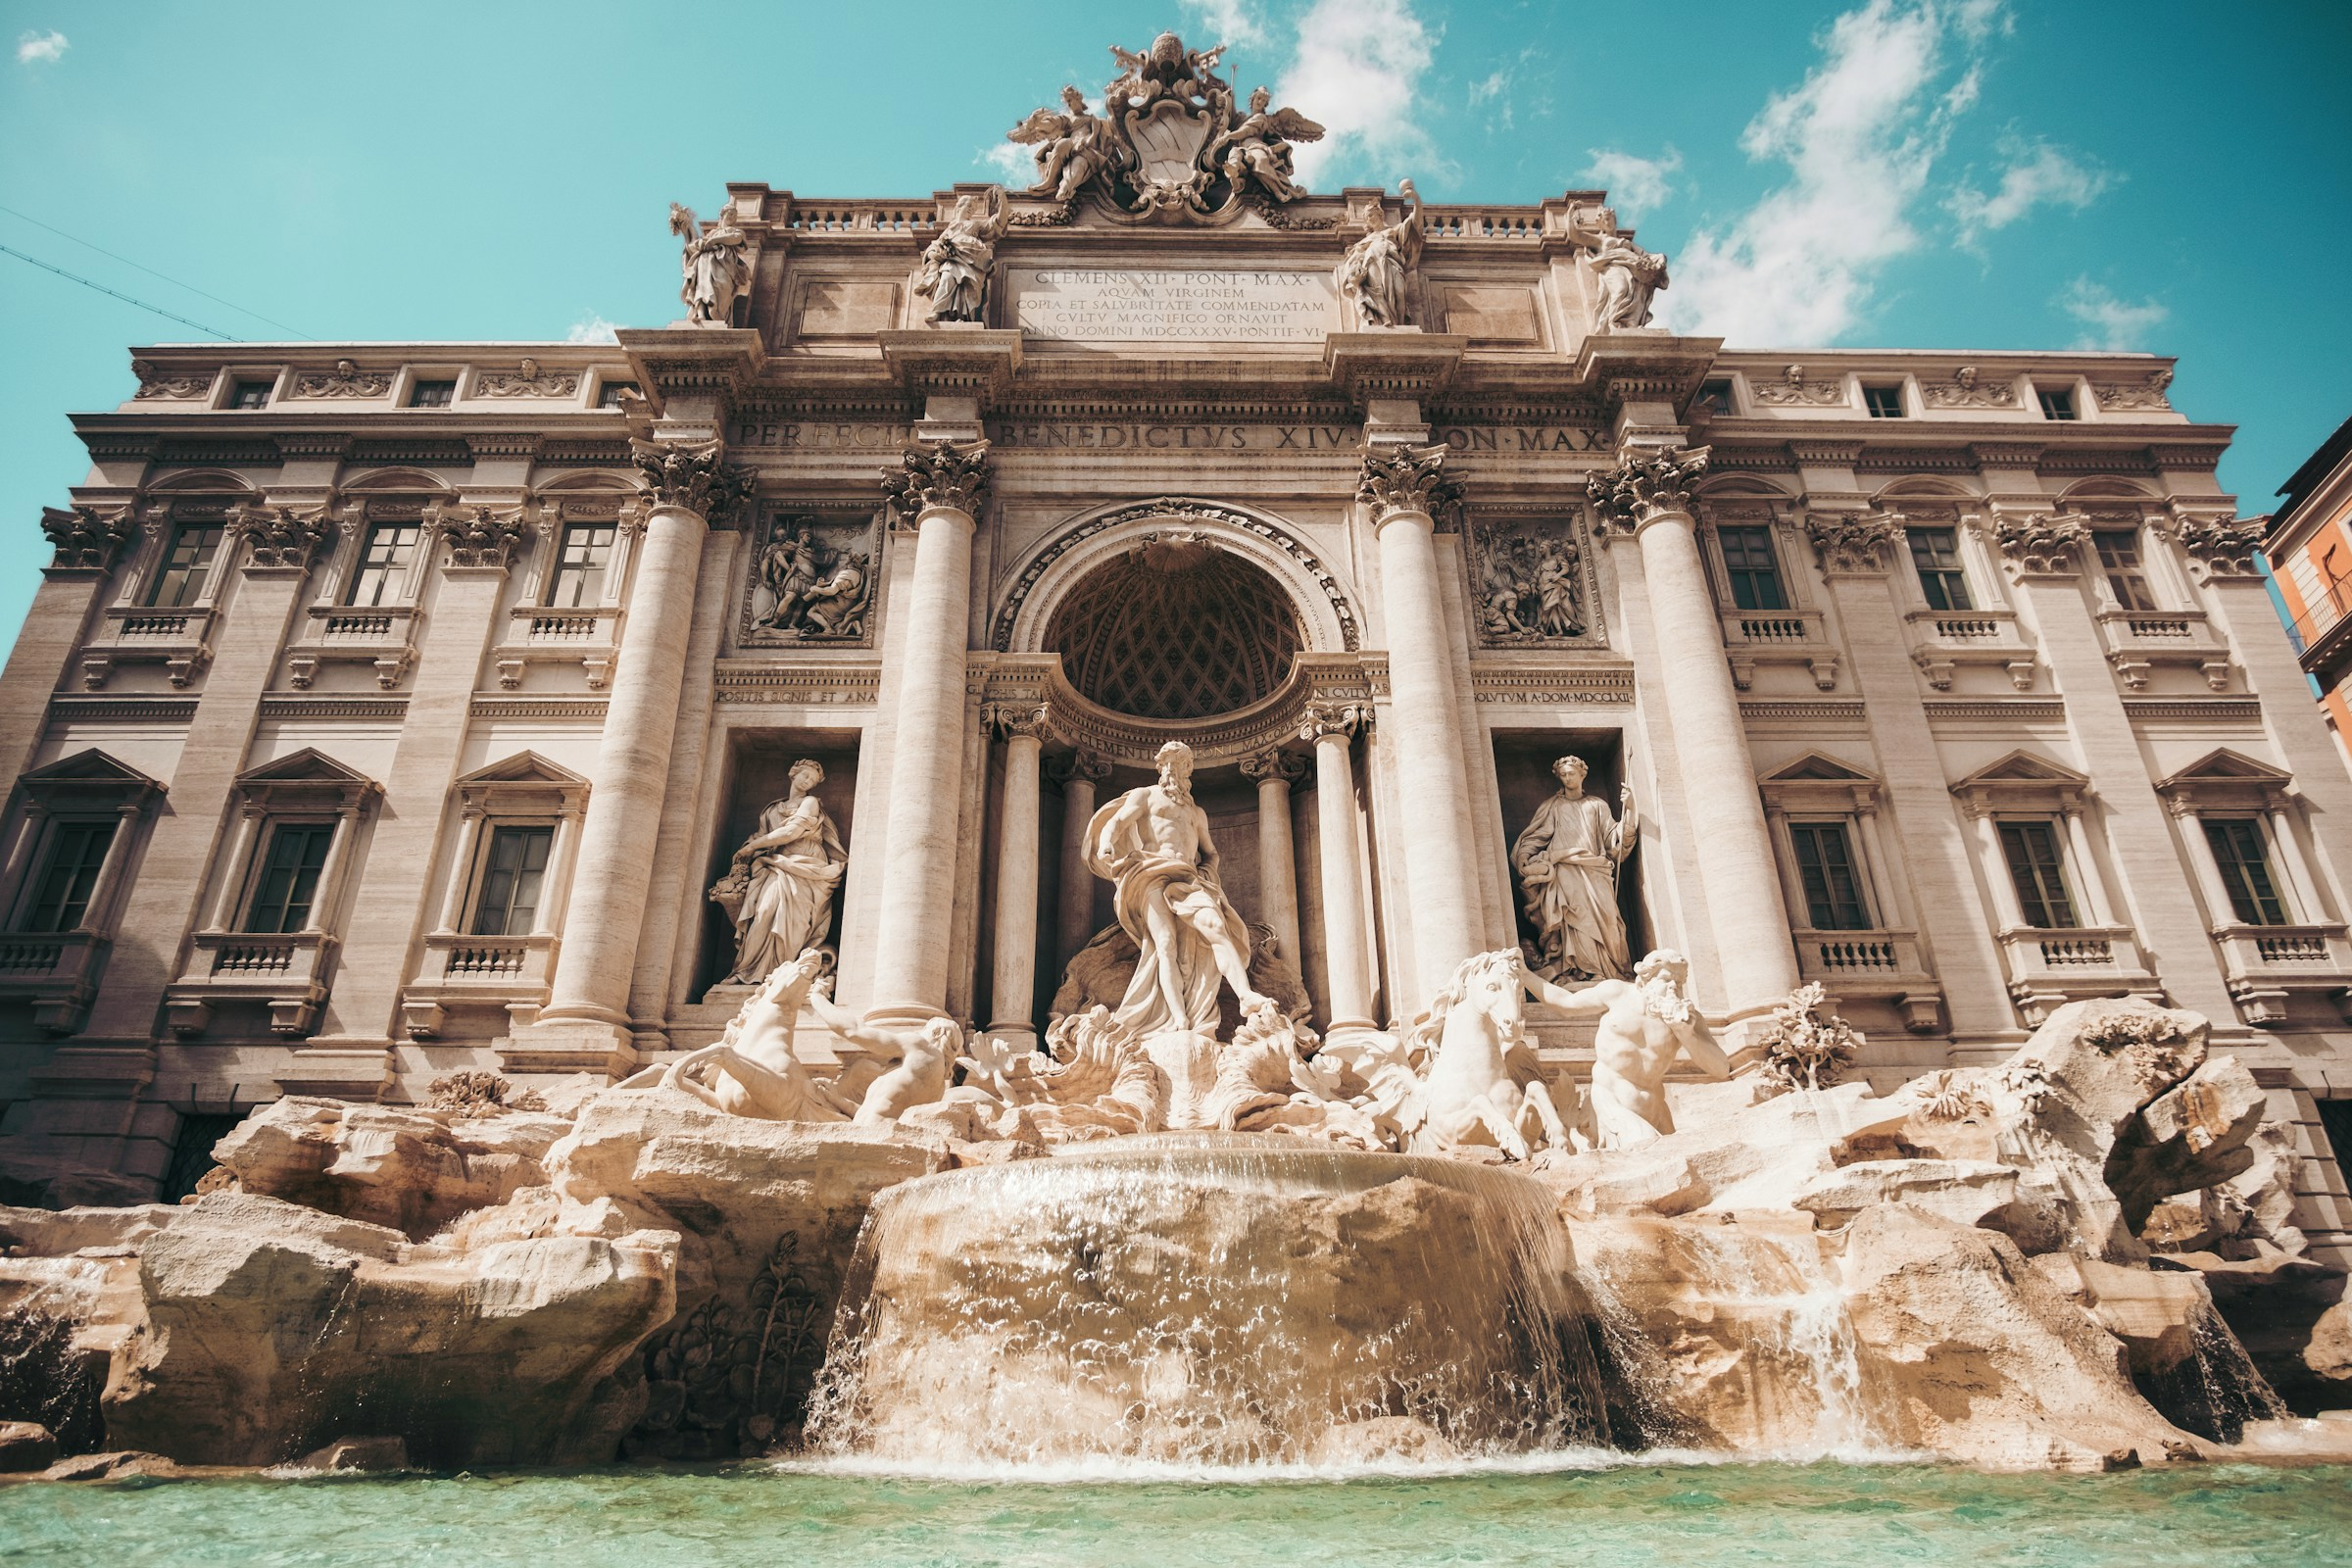 Fontana di Trevi, den berömda barock fontänen i Rom, med skulpturer och kristallklart vatten på en solig dag, en populär turistattraktion.